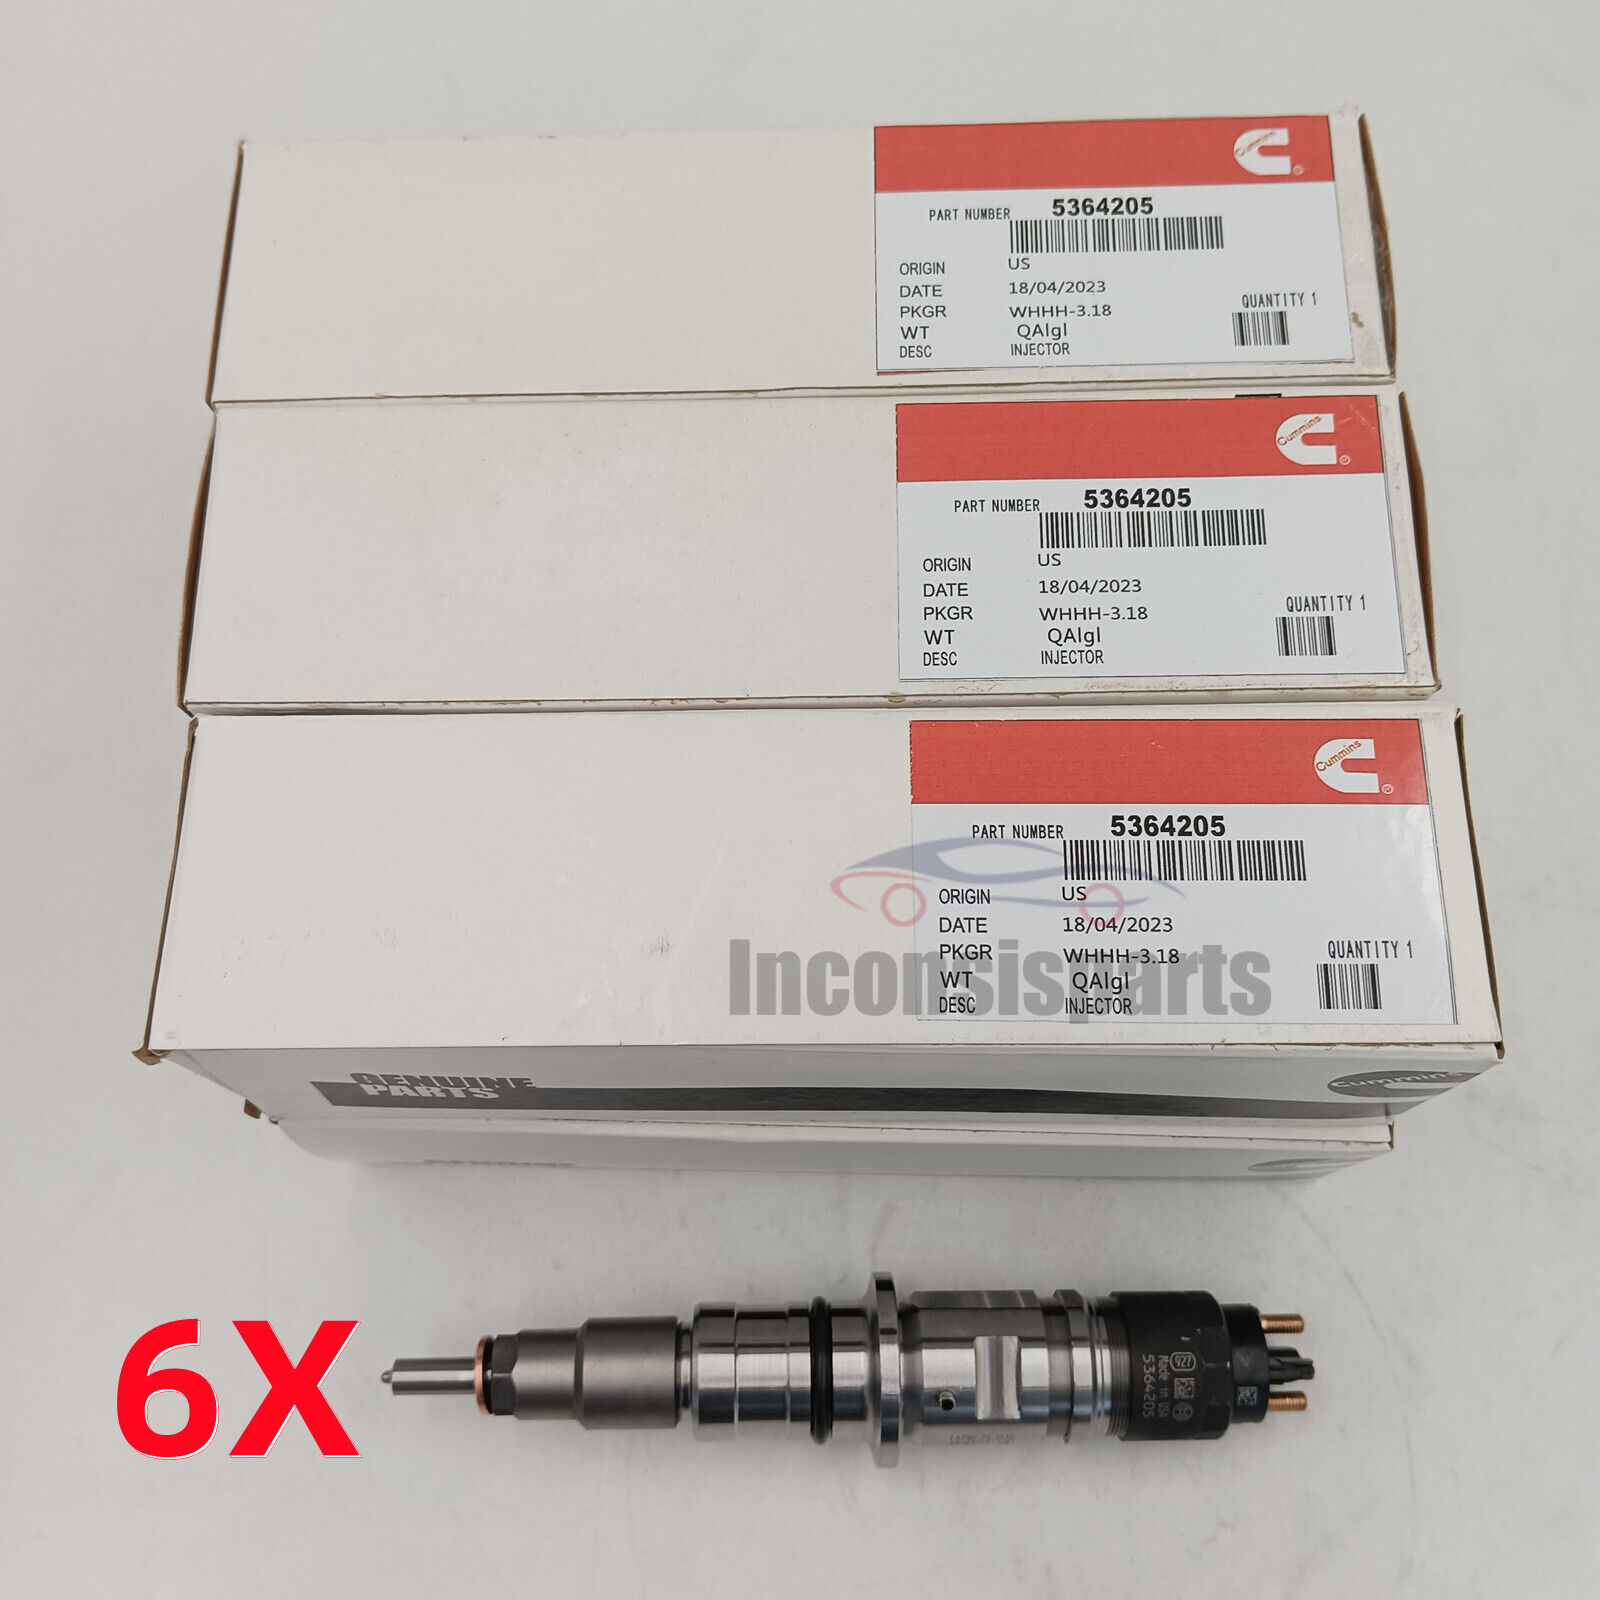 6x 5364205 0445124047 Fuel Injector Fits For 19-22 Ram 3500 6.7L Diesel Cummins